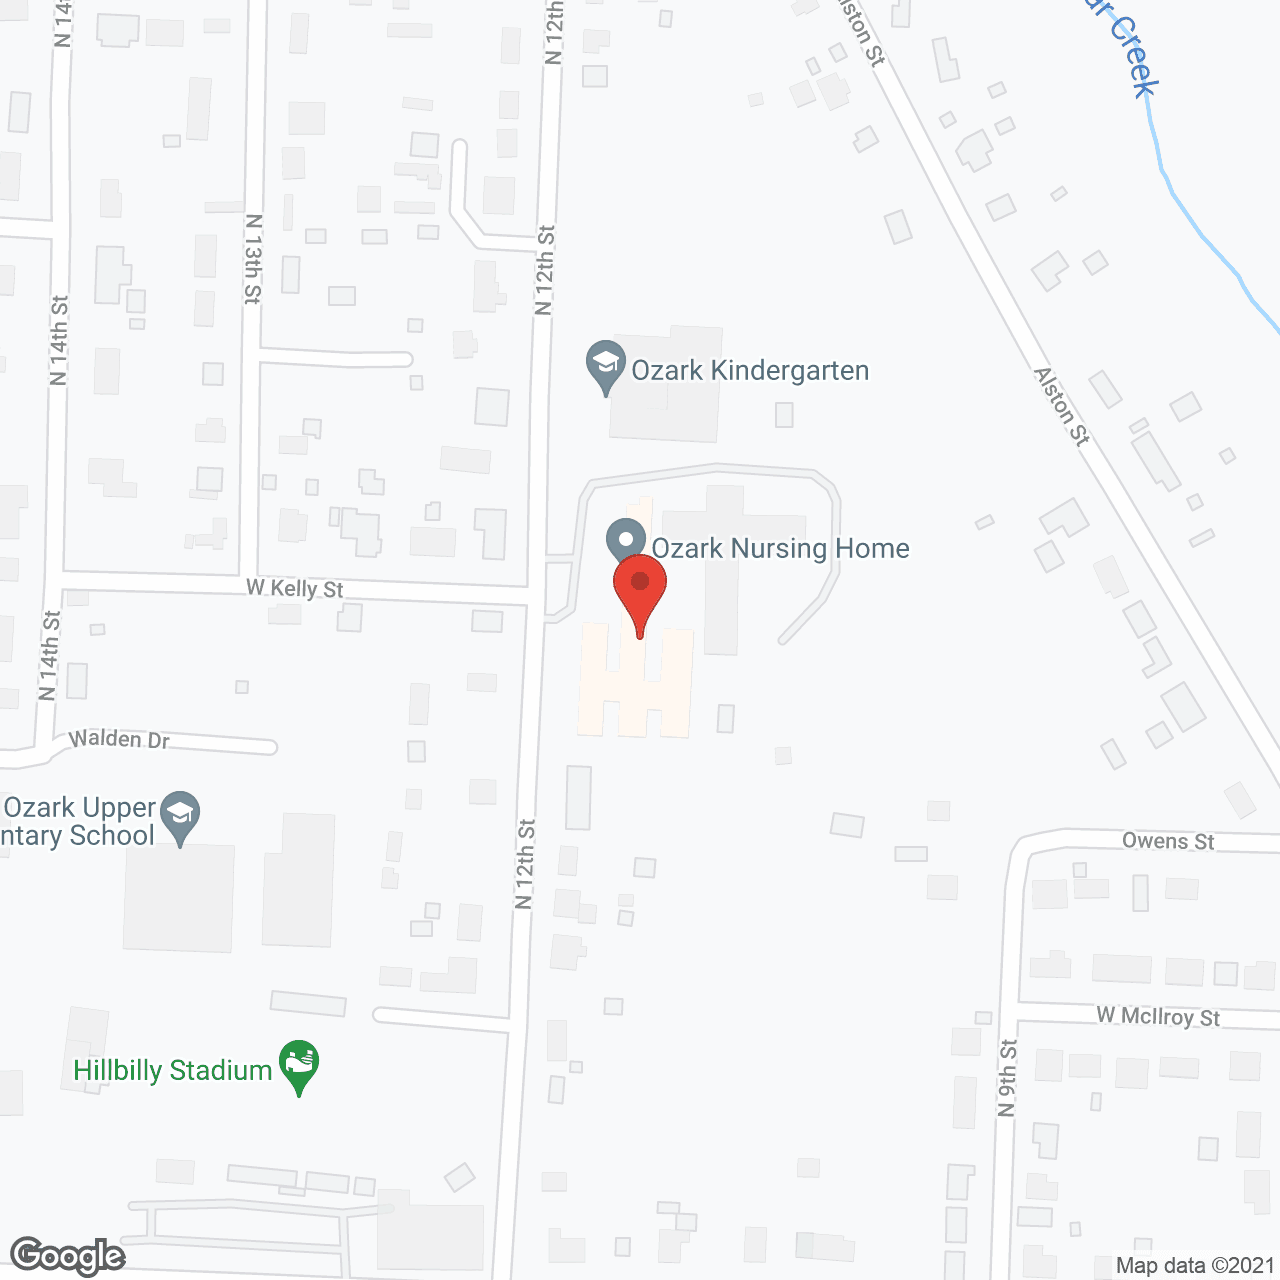 Ozark Nursing Home Inc in google map